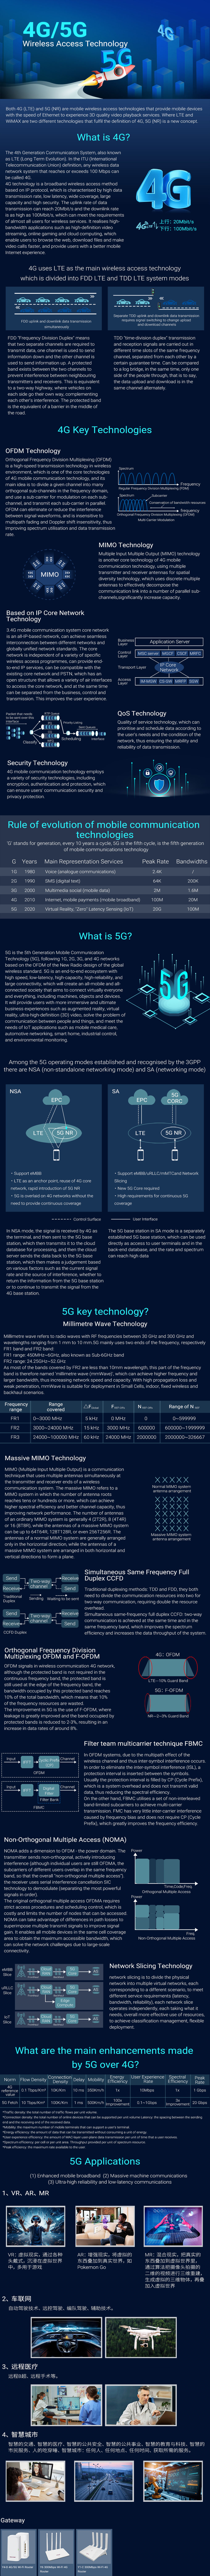 4G/5G Wireless Access Technology